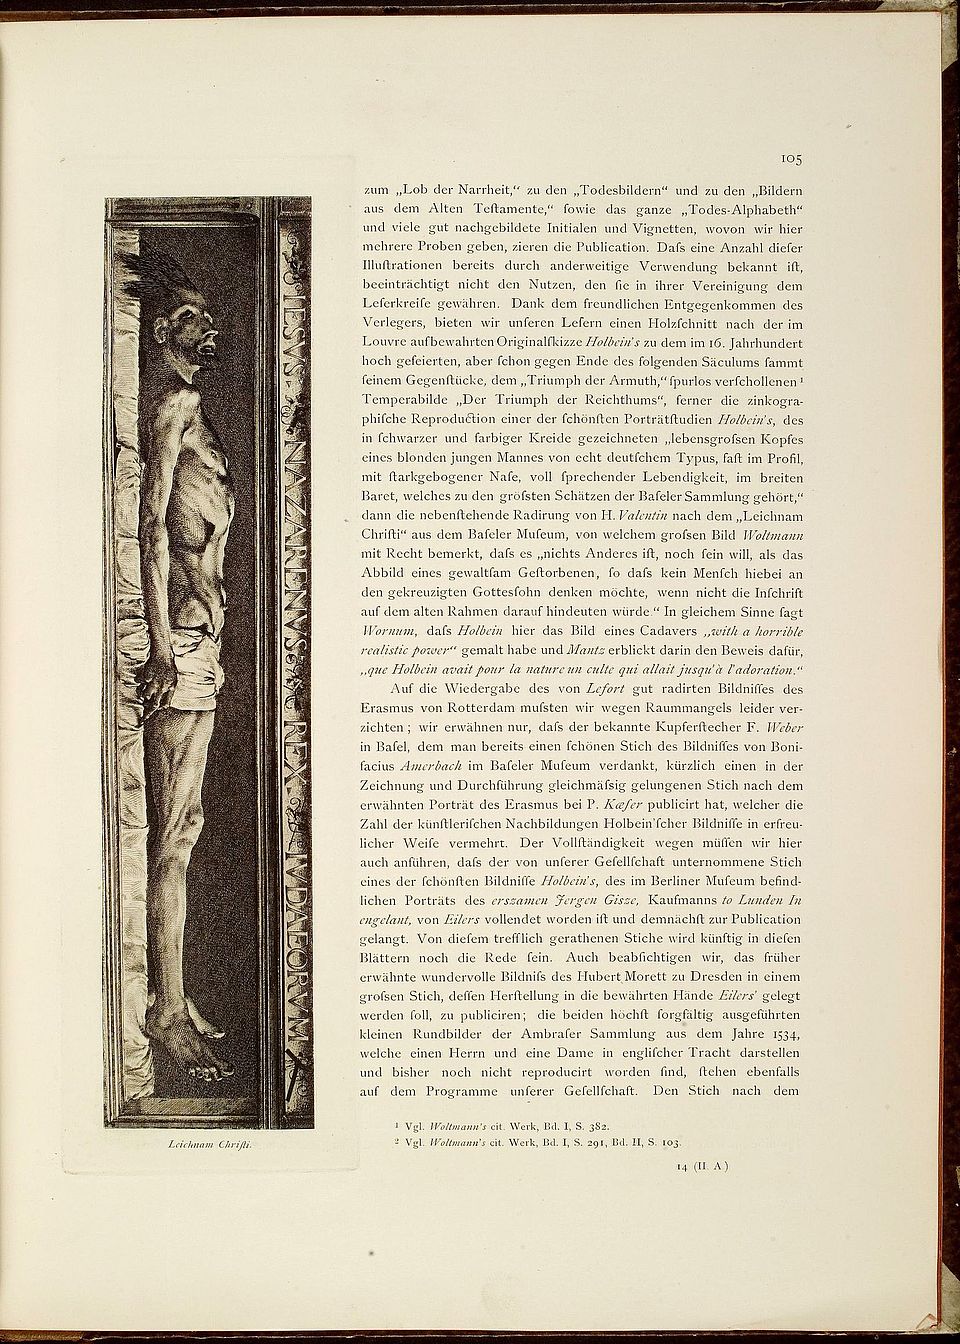 Leichnam Christi. Nach H. Holbein d. J. radiert von H. Valentin, in: Die Graphischen Künste, Jg. 1 (1879), S. 105.